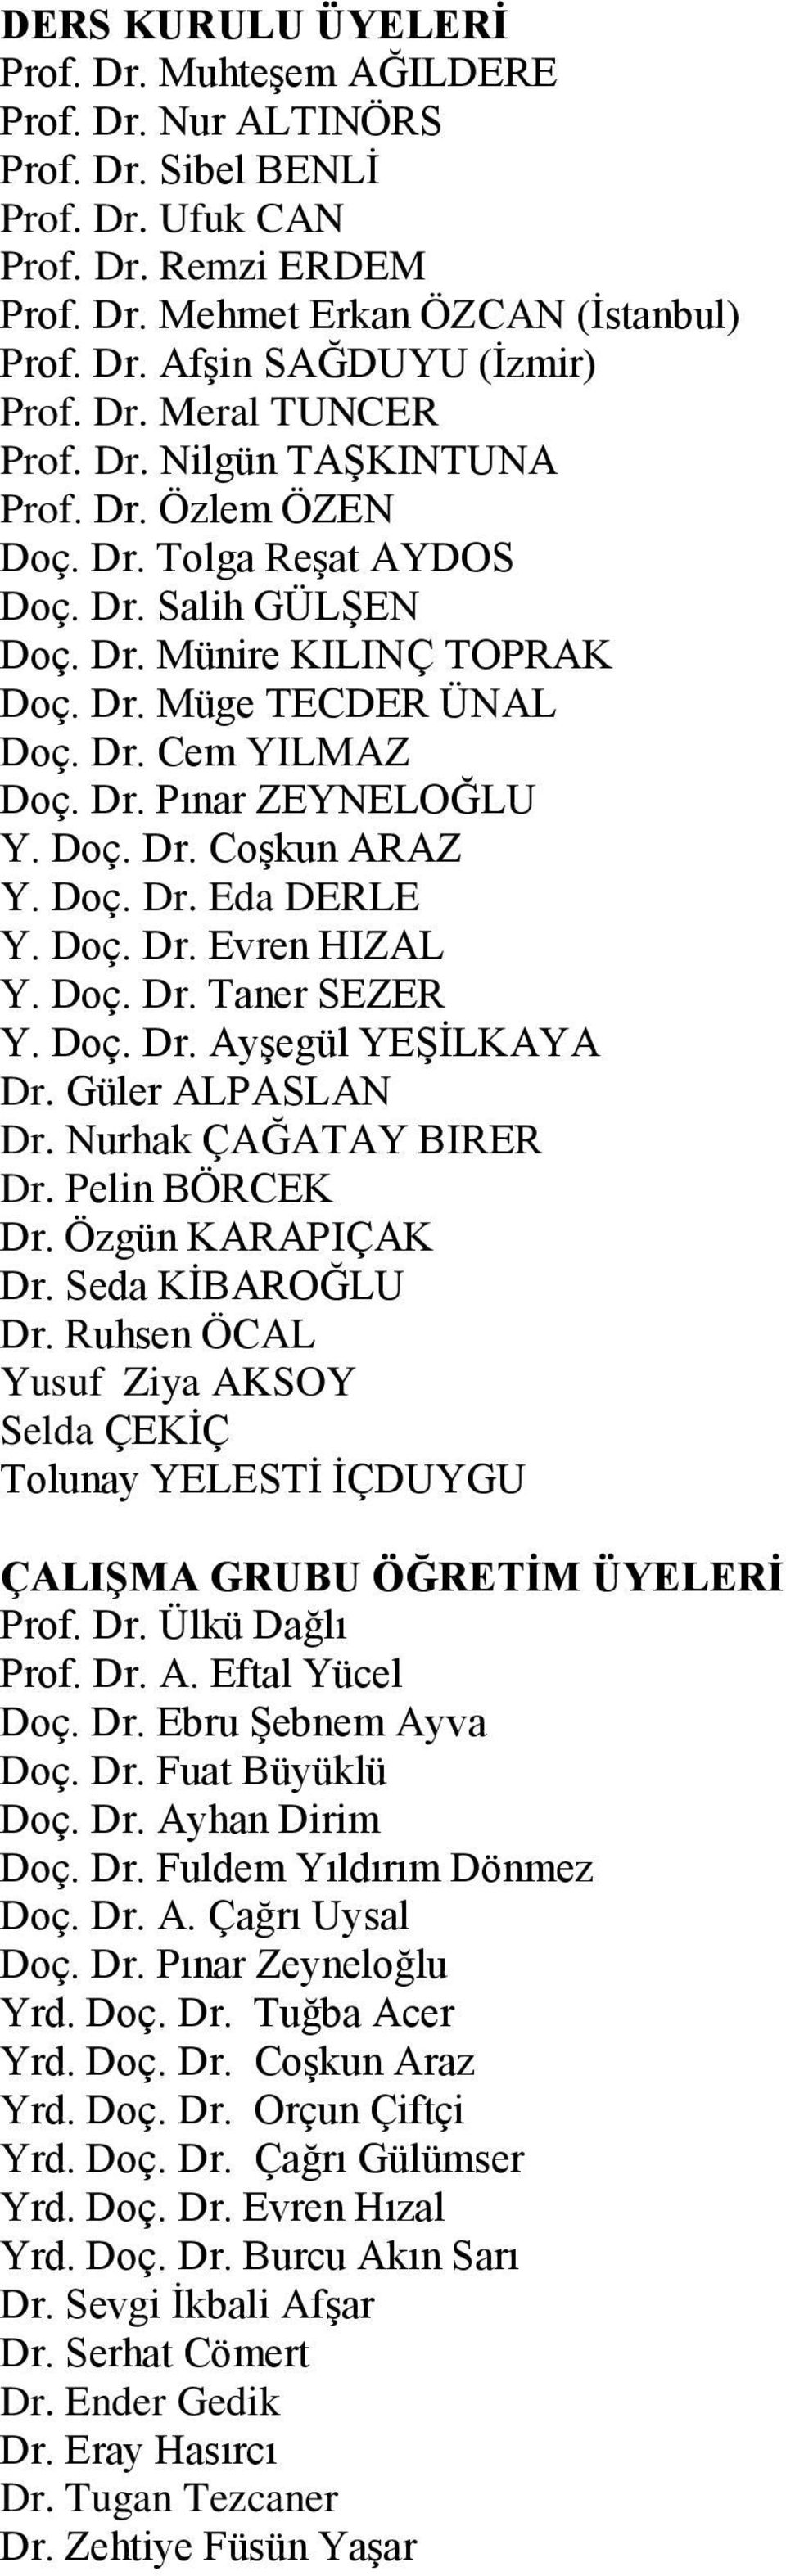 Doç. Dr. Coşkun ARAZ Y. Doç. Dr. Eda DERLE Y. Doç. Dr. Evren HIZAL Y. Doç. Dr. Taner SEZER Y. Doç. Dr. Ayşegül YEŞİLKAYA Dr. Güler ALPASLAN Dr. Nurhak ÇAĞATAY BIRER Dr. Pelin BÖRCEK Dr.